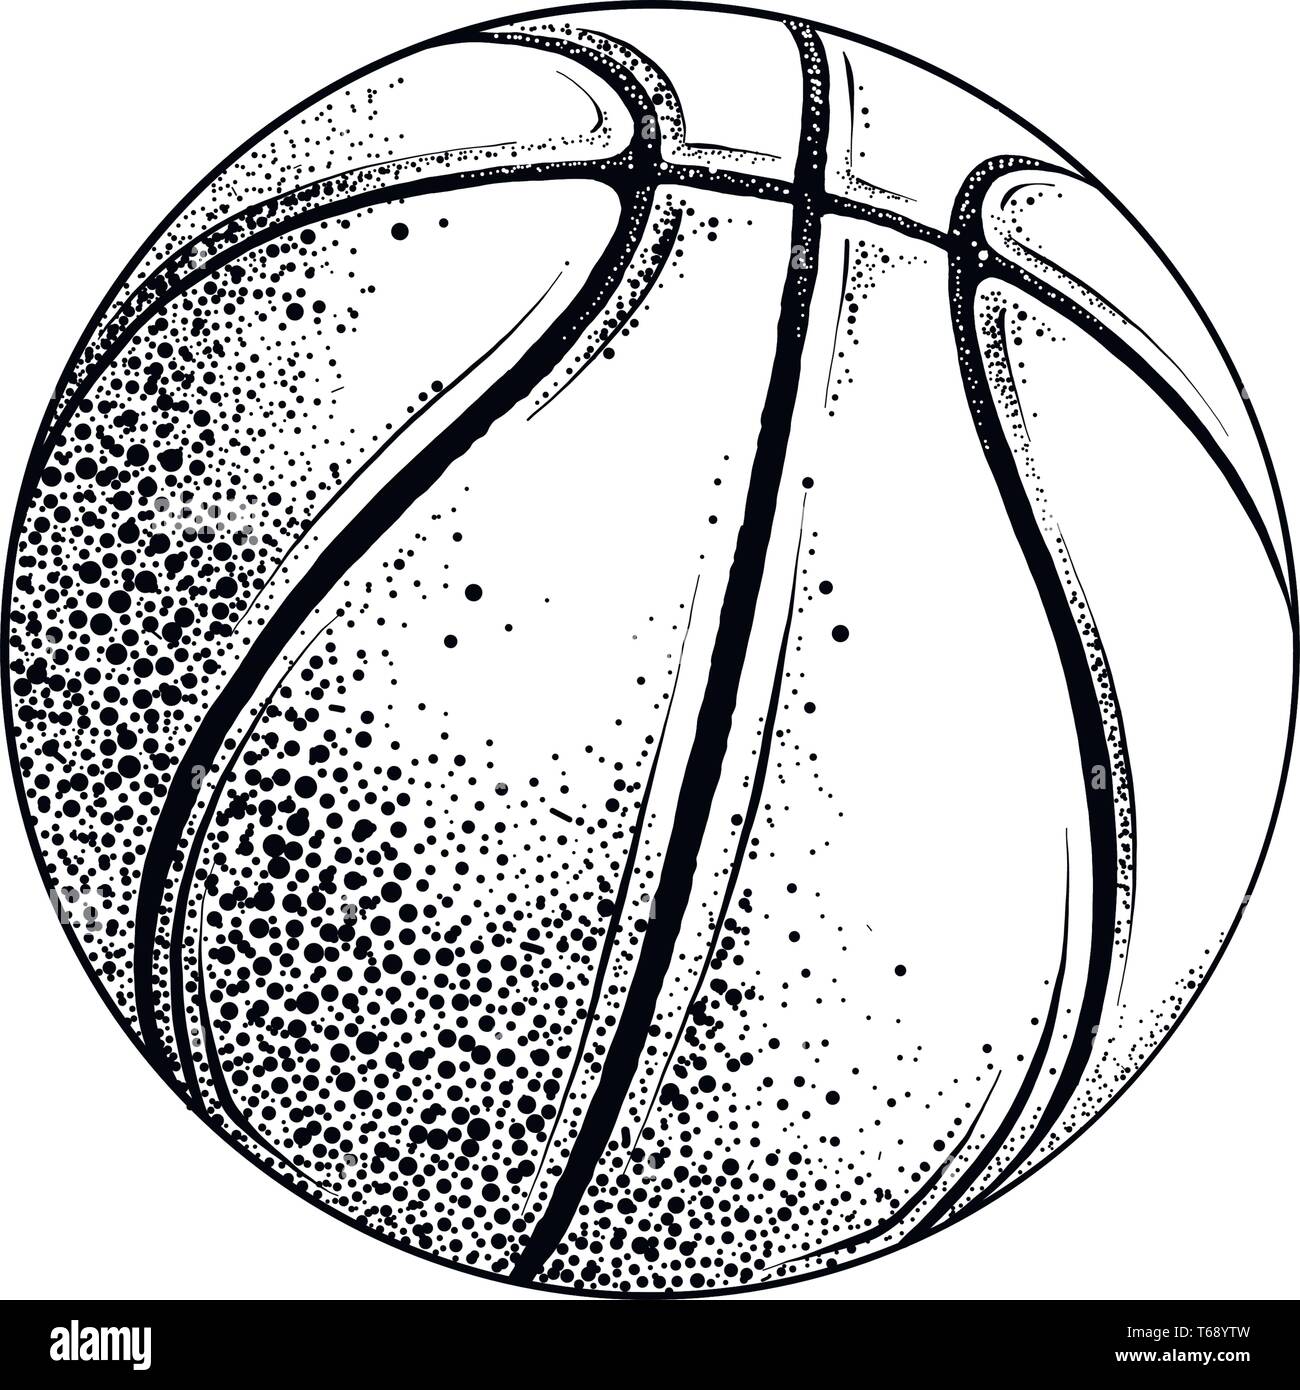 Dessin vectoriel de basket-ball ball en couleur noir, isolé sur fond blanc.  Illustration graphique, dessin à la main. Dimensions des affiches,  décoration Image Vectorielle Stock - Alamy